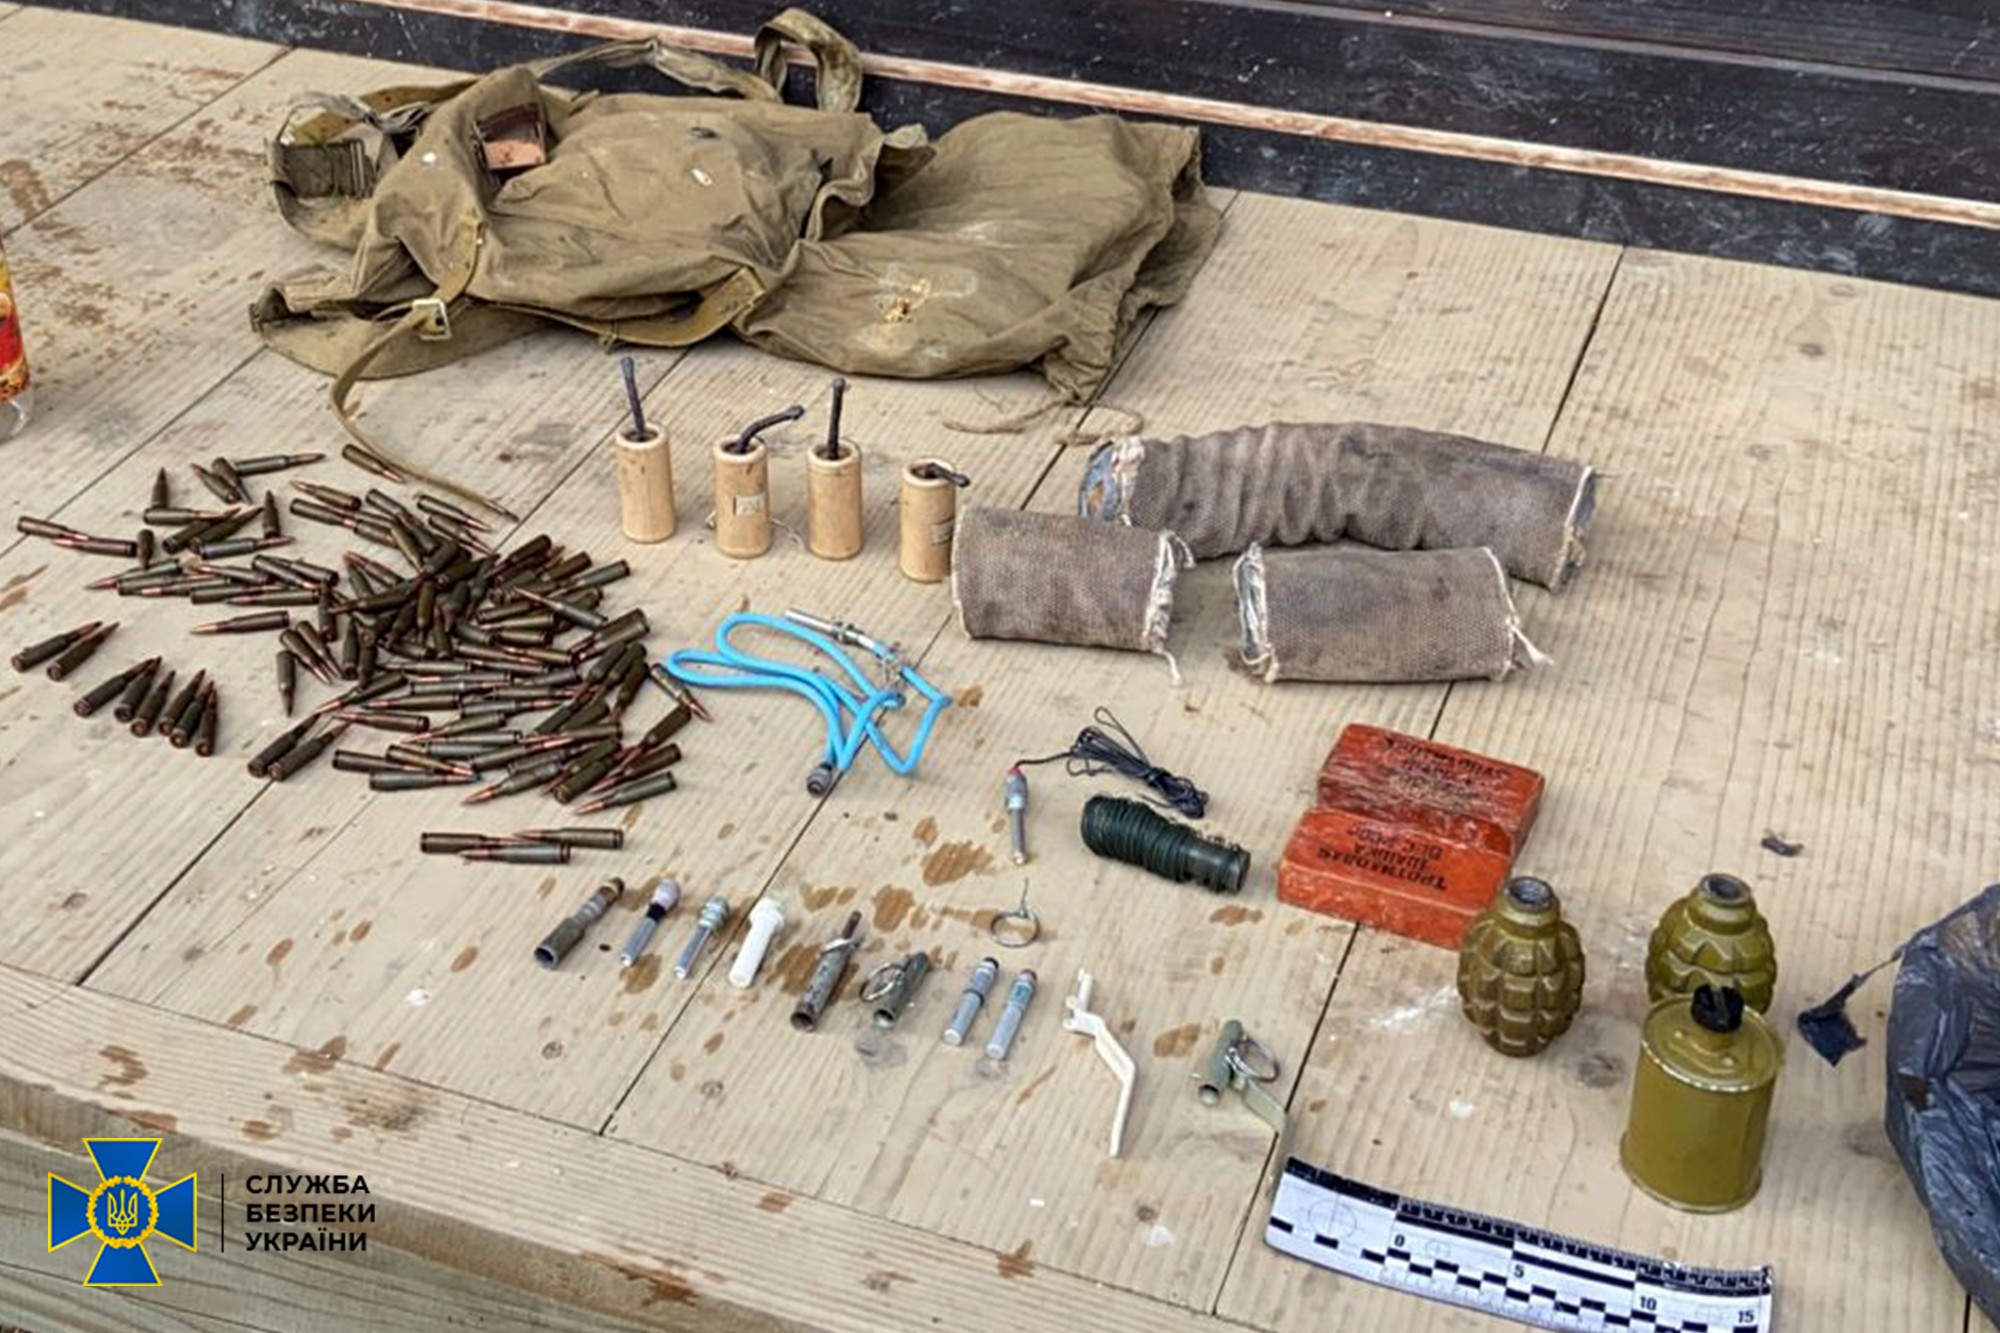 У «общественного активиста» из Львовской области нашли арсенал с гранатами - 1 - изображение